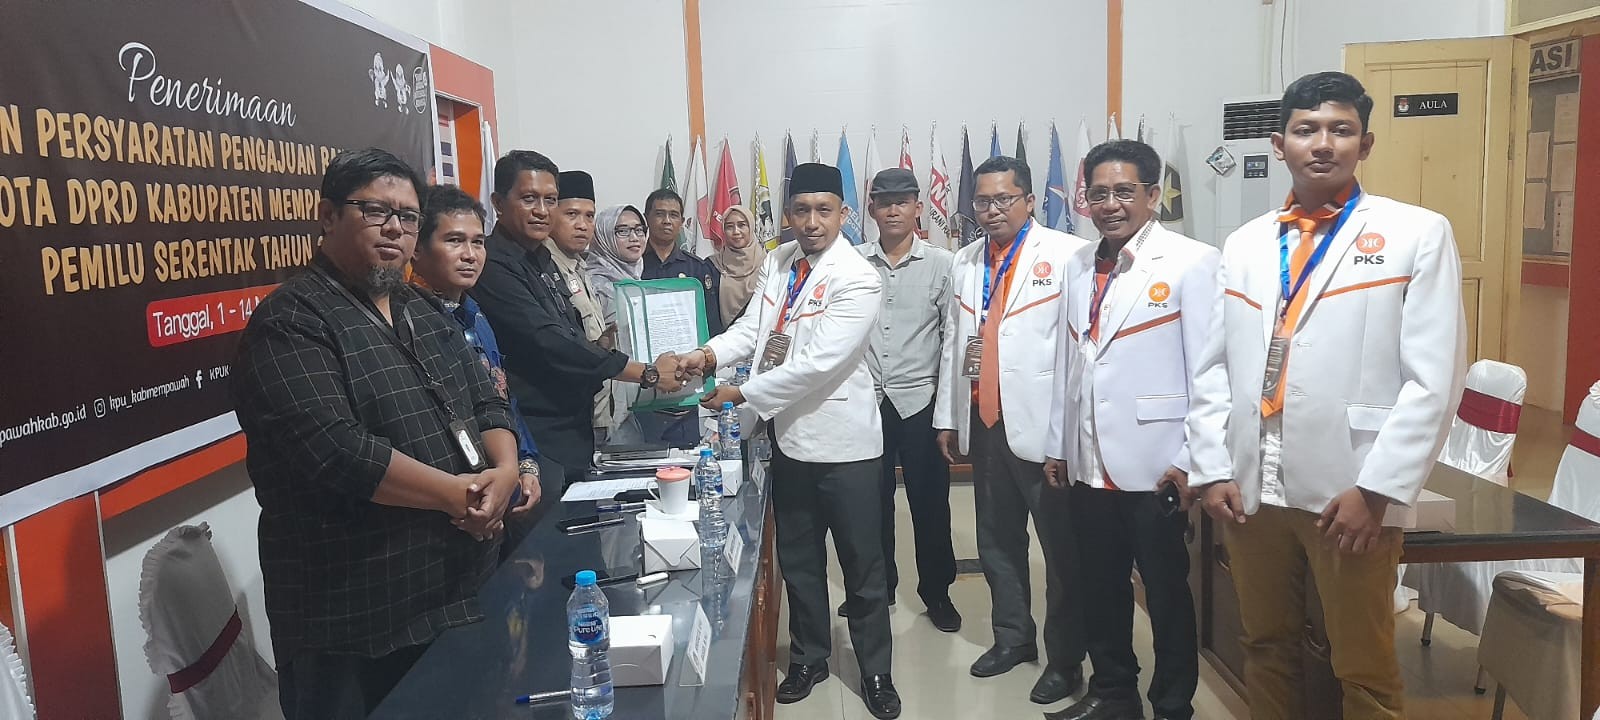 Pengajuan Bakal Calon Anggota DPRD Kabupaten Mempawah Pemilu Tahun 2024 oleh Partai PKS